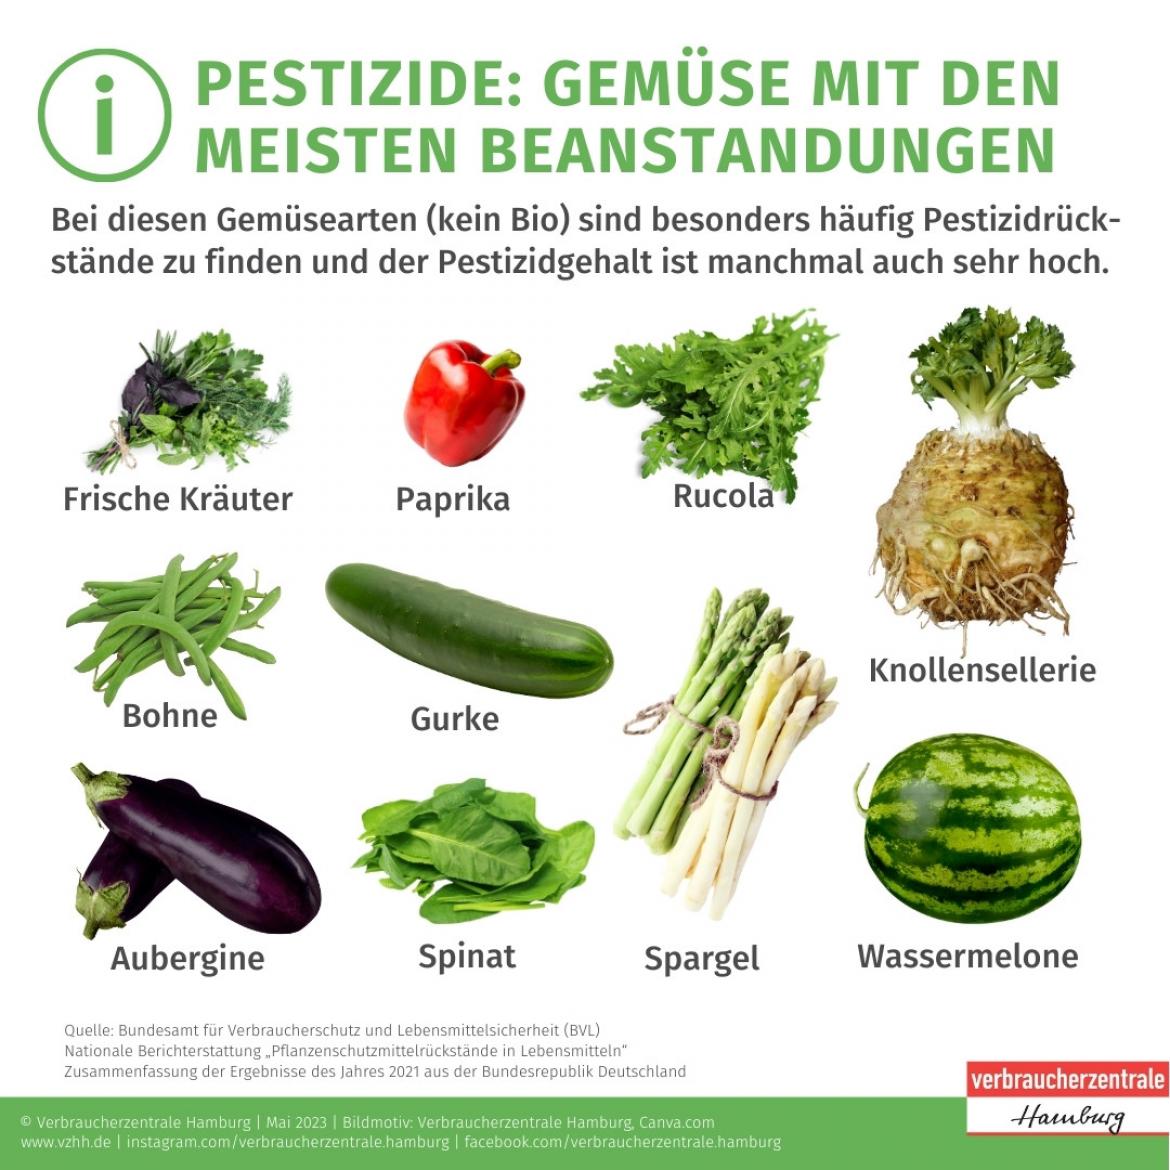 Diese Gemüsearten (kein Bio) wurden am meisten wegen Pestizidrückständen beanstandet: Frische Kräuter, Bohnen, Auberginen, Paprikas / Chilis, Spinat, Gurken, Rucola, Melone, Knollensellerie, Spargel